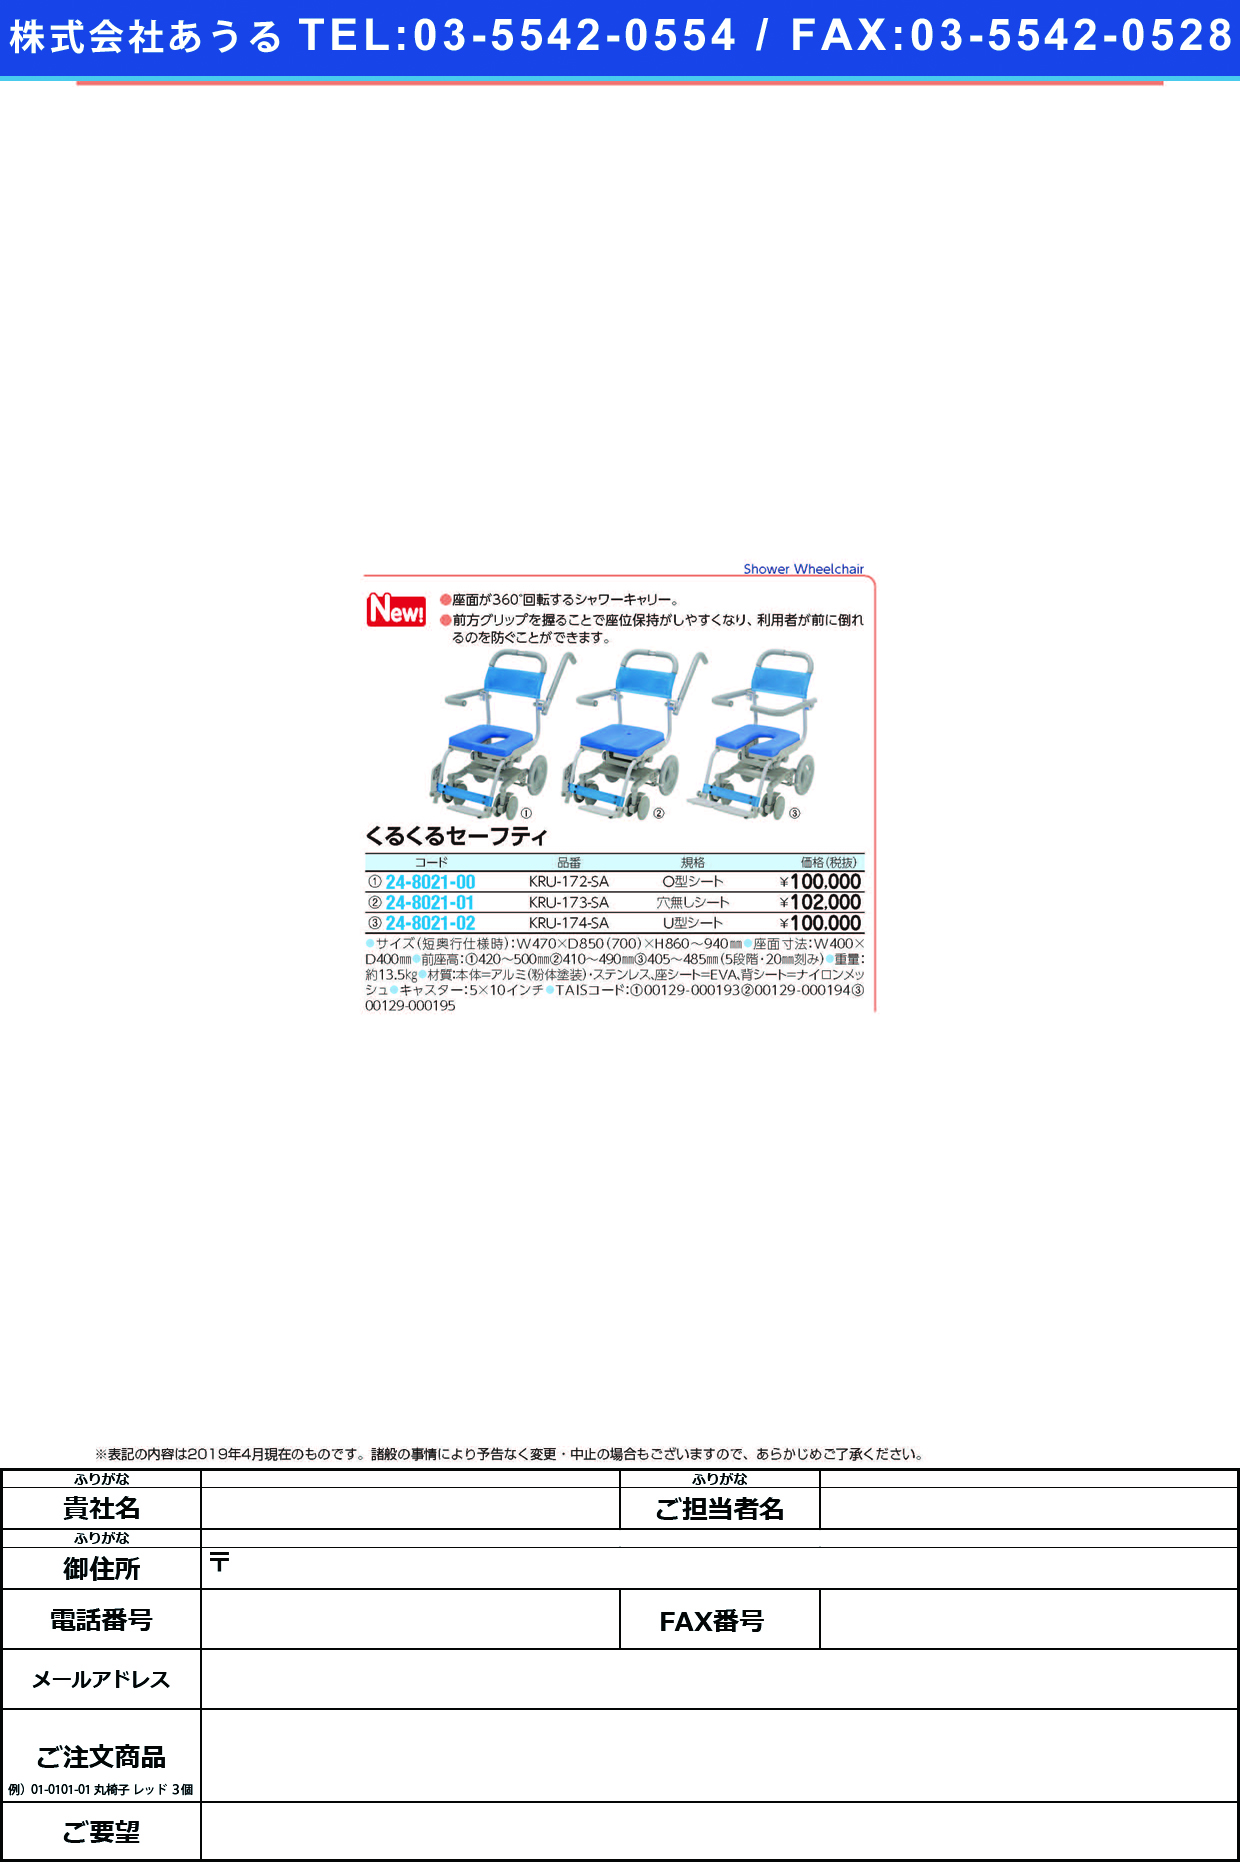 (24-8021-02)くるくるセーフティ（Ｕ型シート）KRU-174-SA ｸﾙｸﾙﾁｪｱD(Uｶﾞﾀｼｰﾄ)(ウチエ)【1台単位】【2019年カタログ商品】